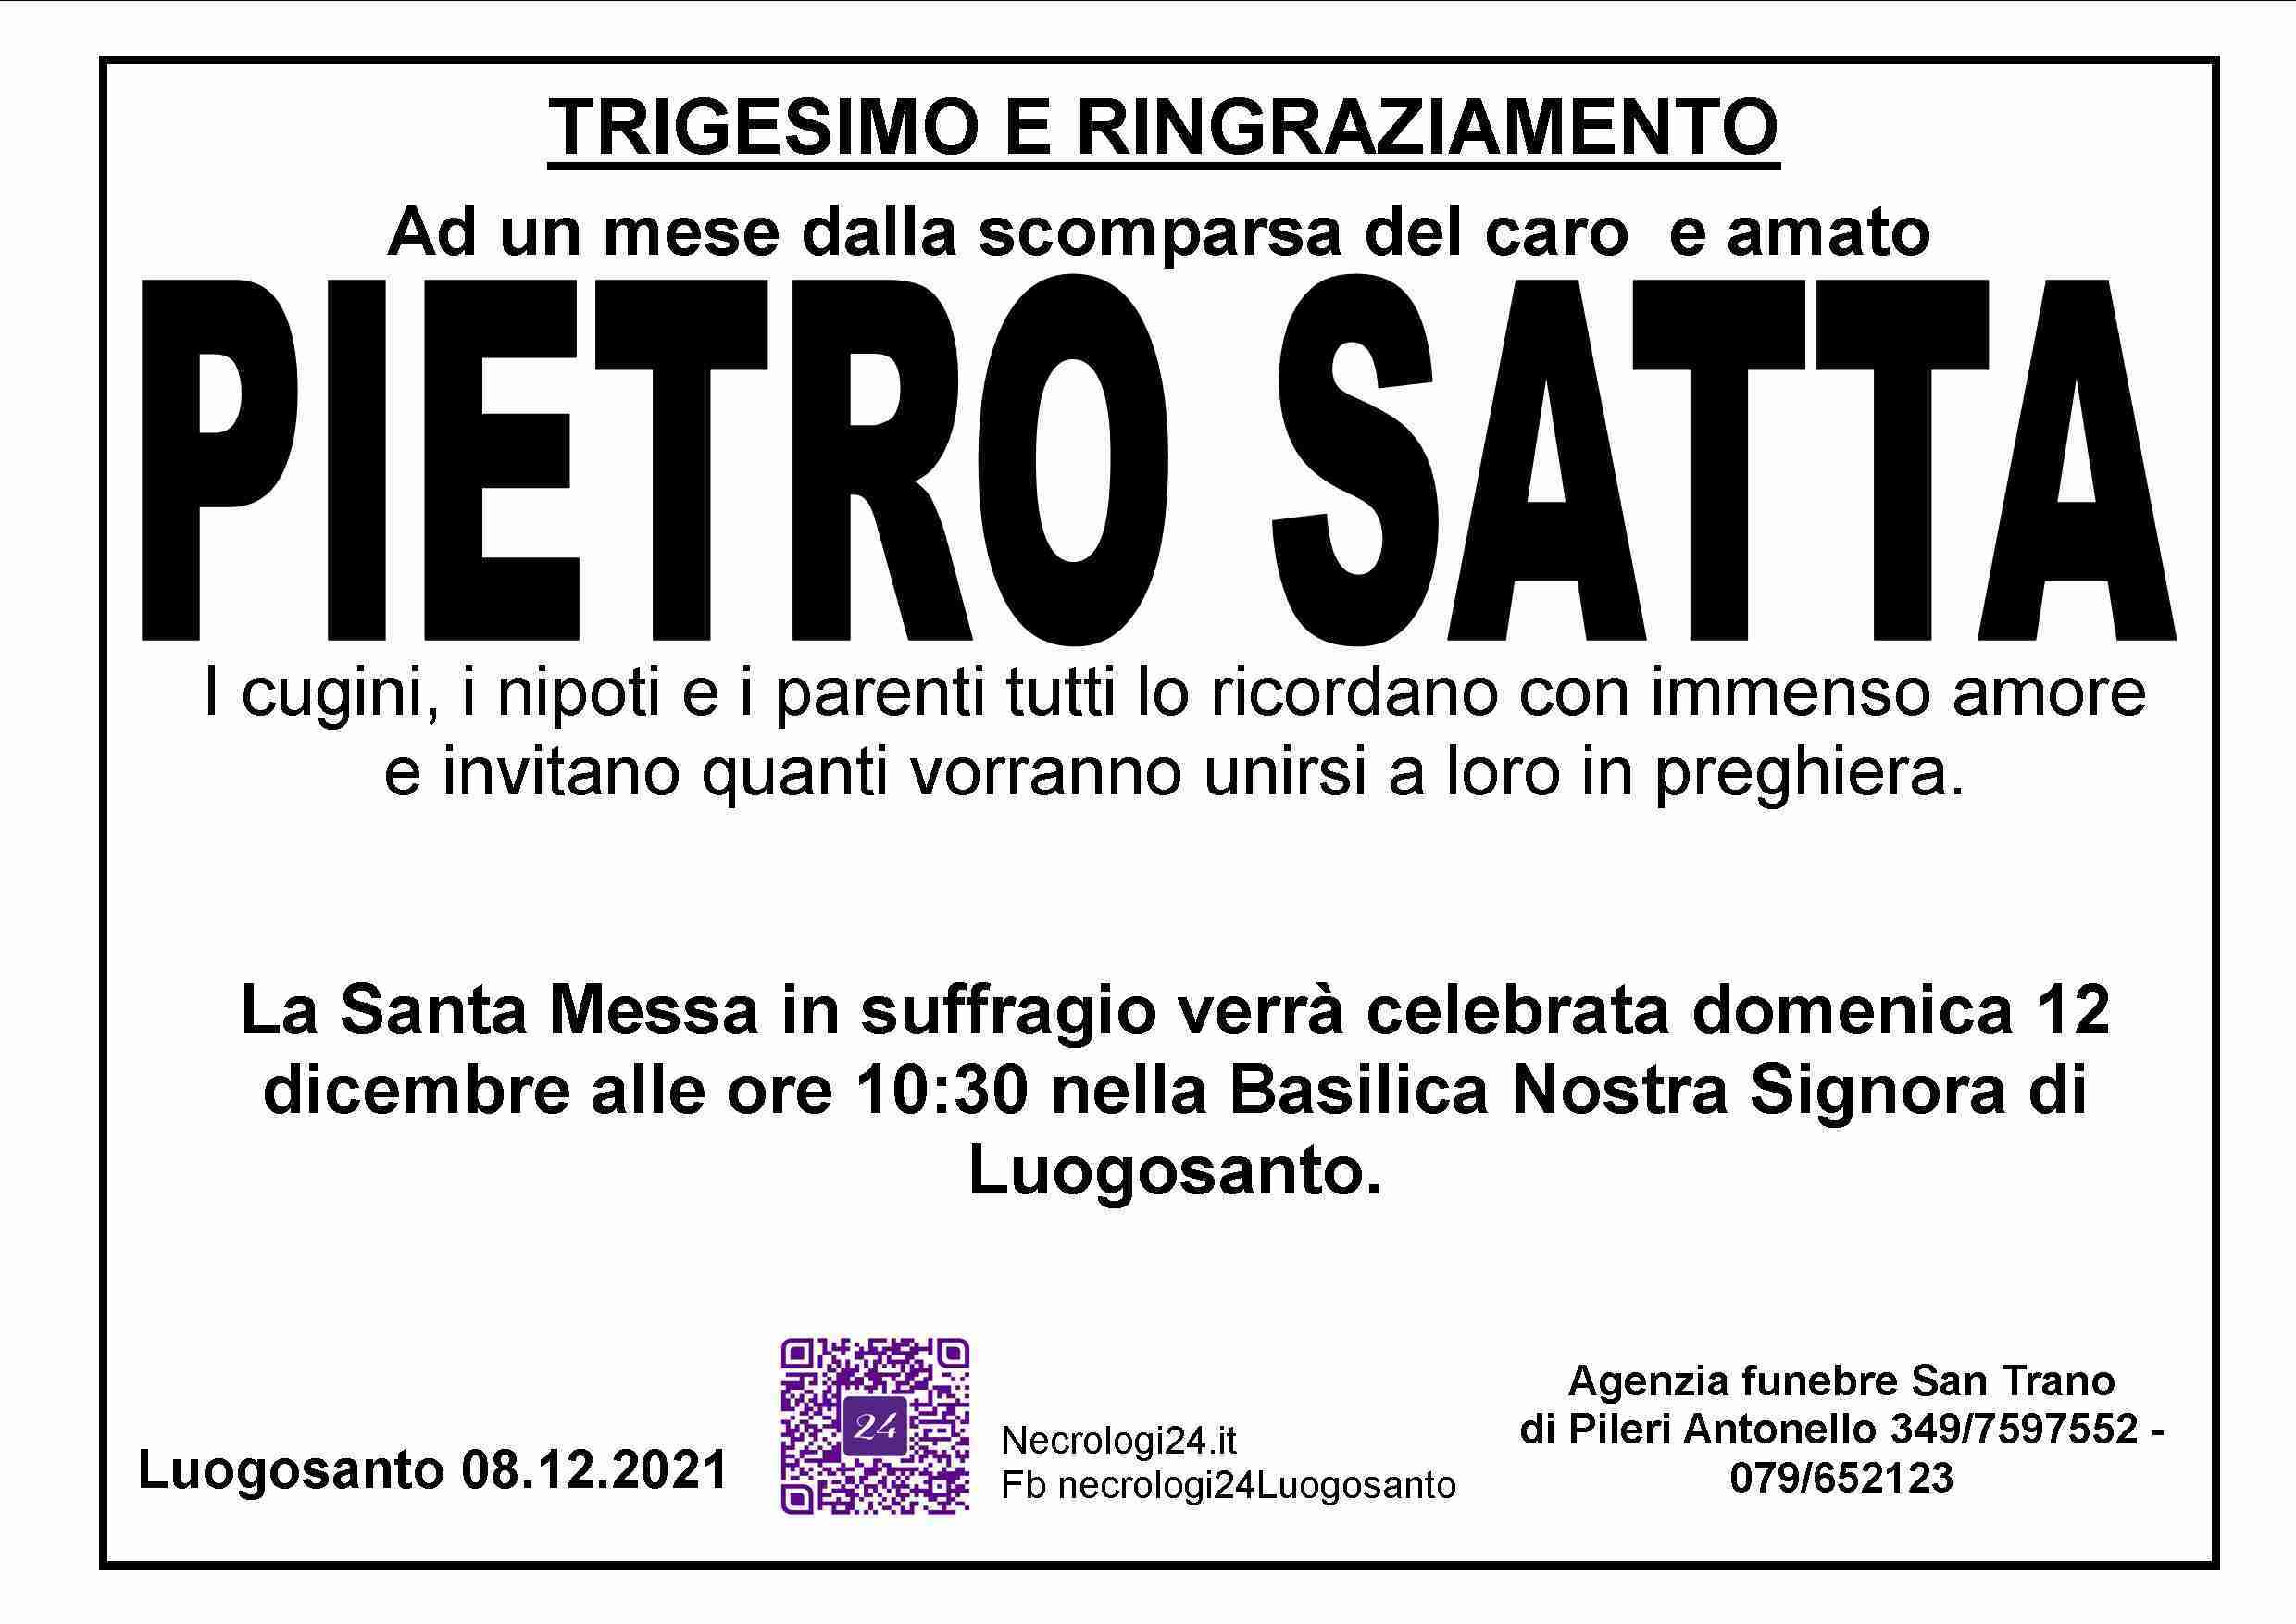 Pietro Satta